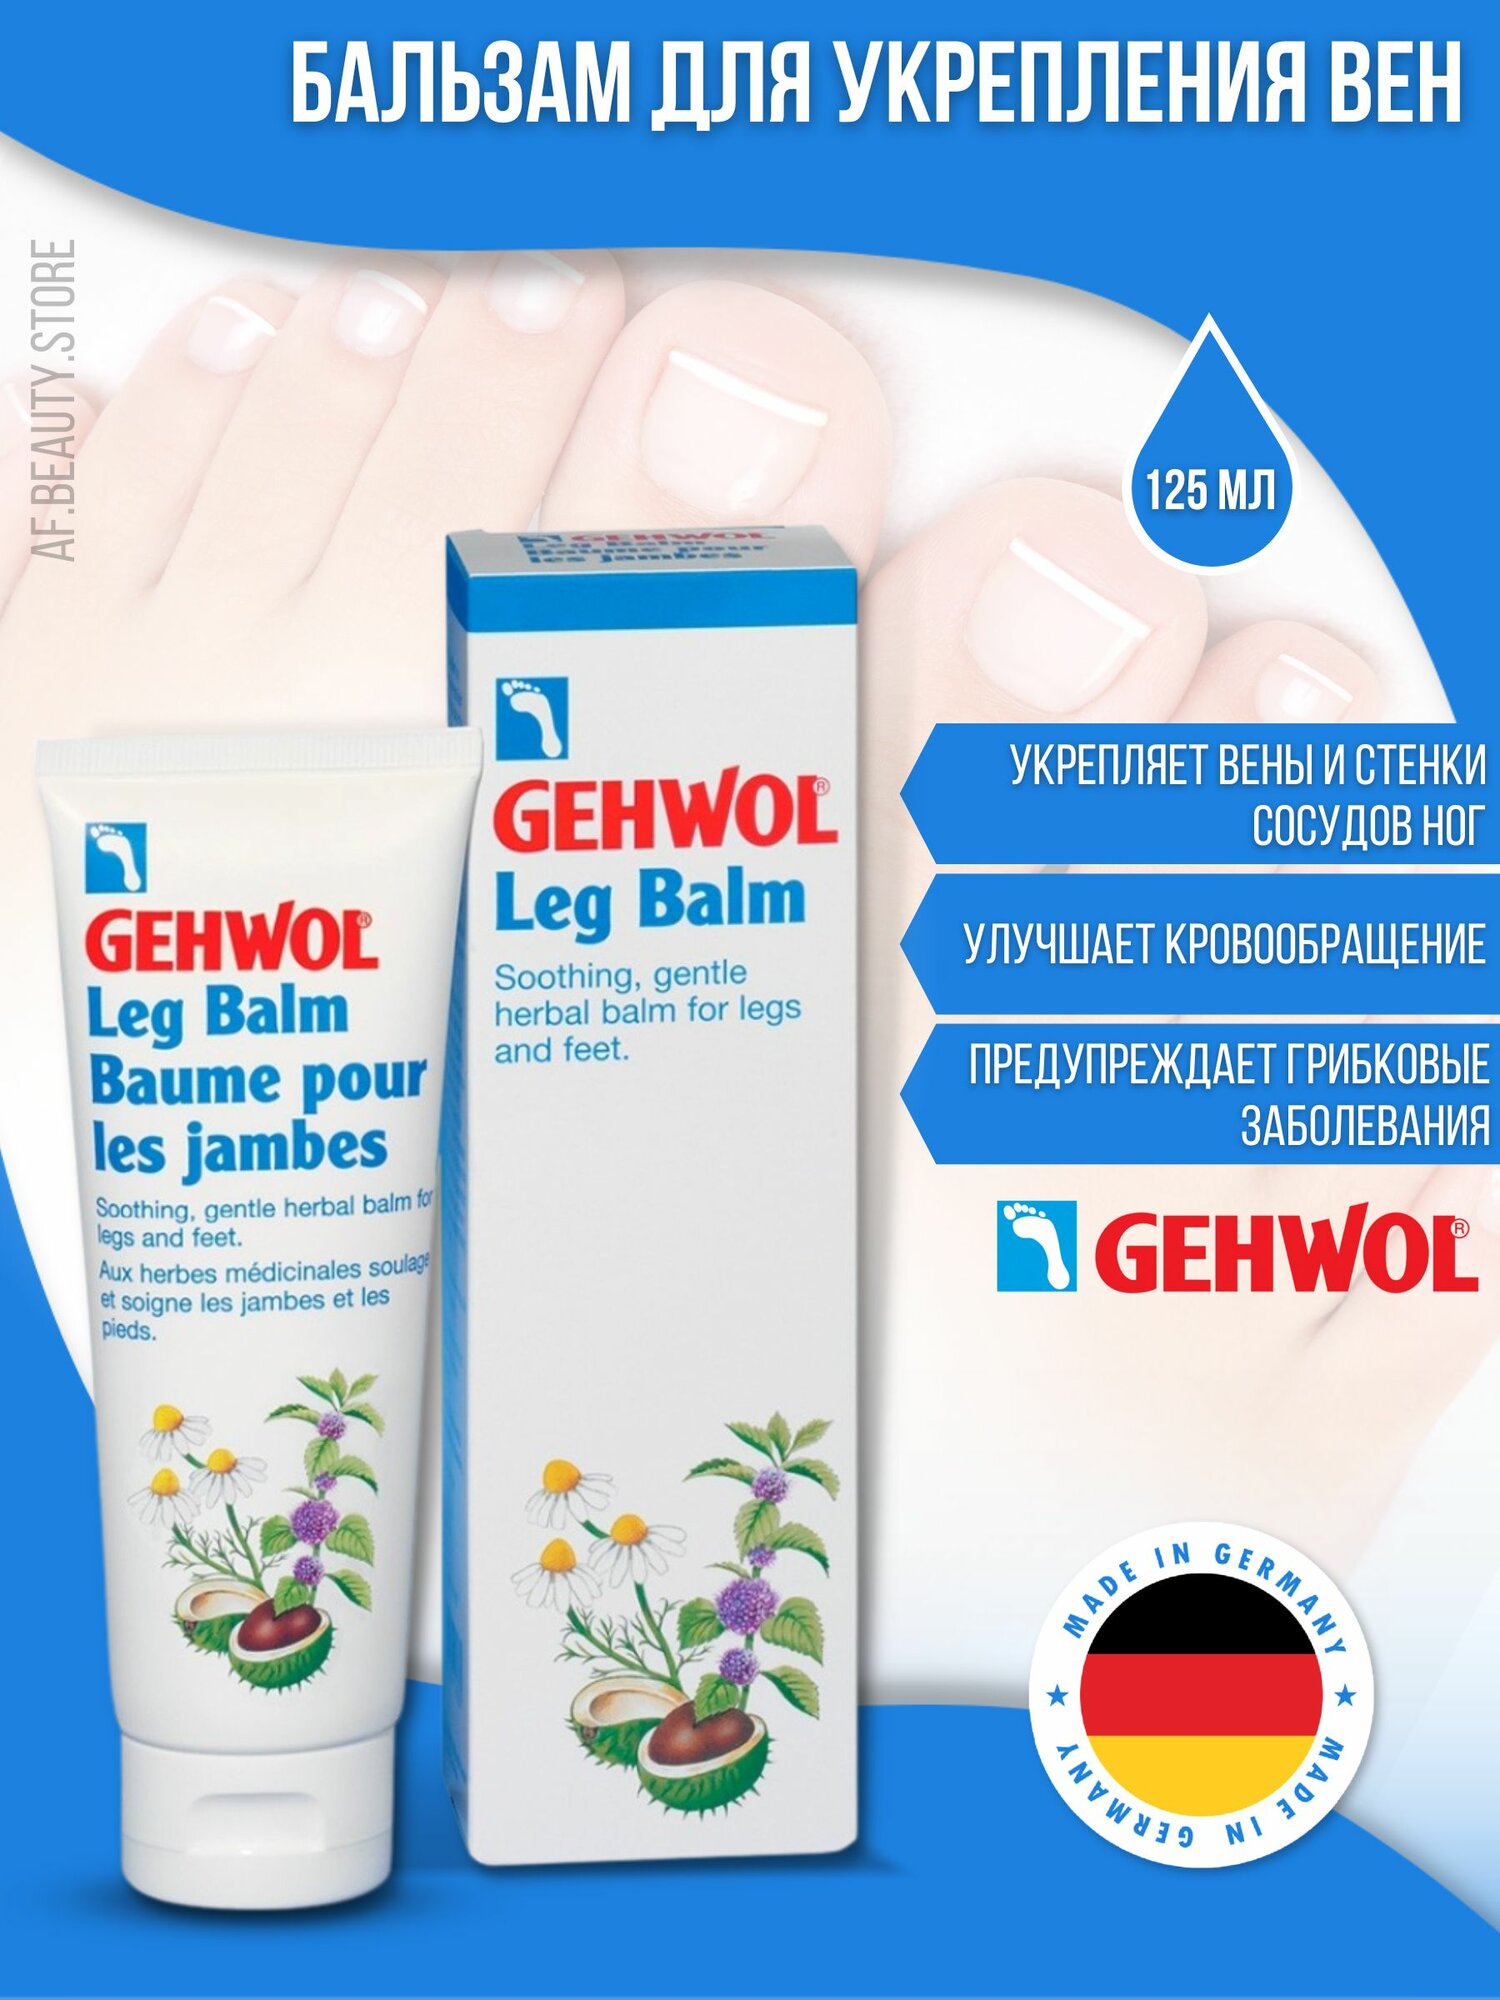 Gehwol Leg Balm - Бальзам для ног для укрепления вен 125 мл